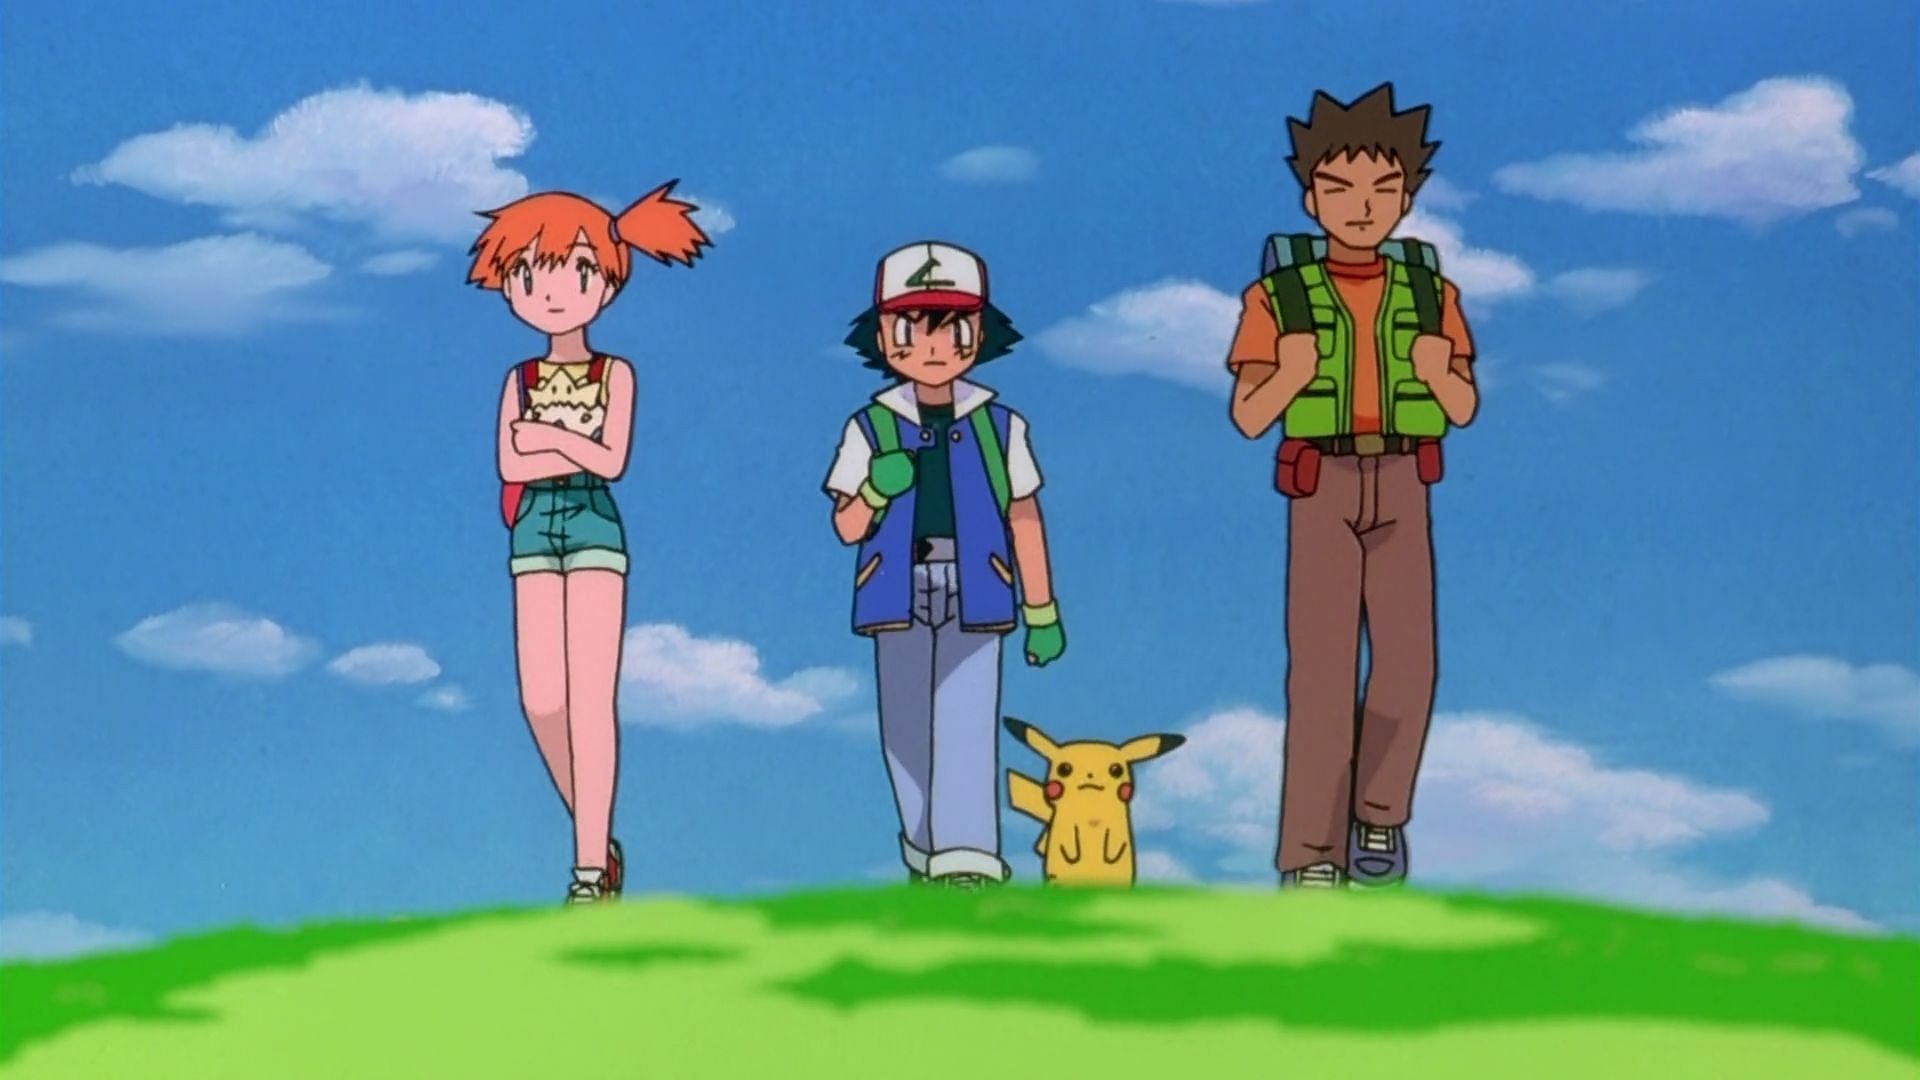 Misty holding Togepi, Ash, Pikachu, and Brock (Image via OLM Inc.)